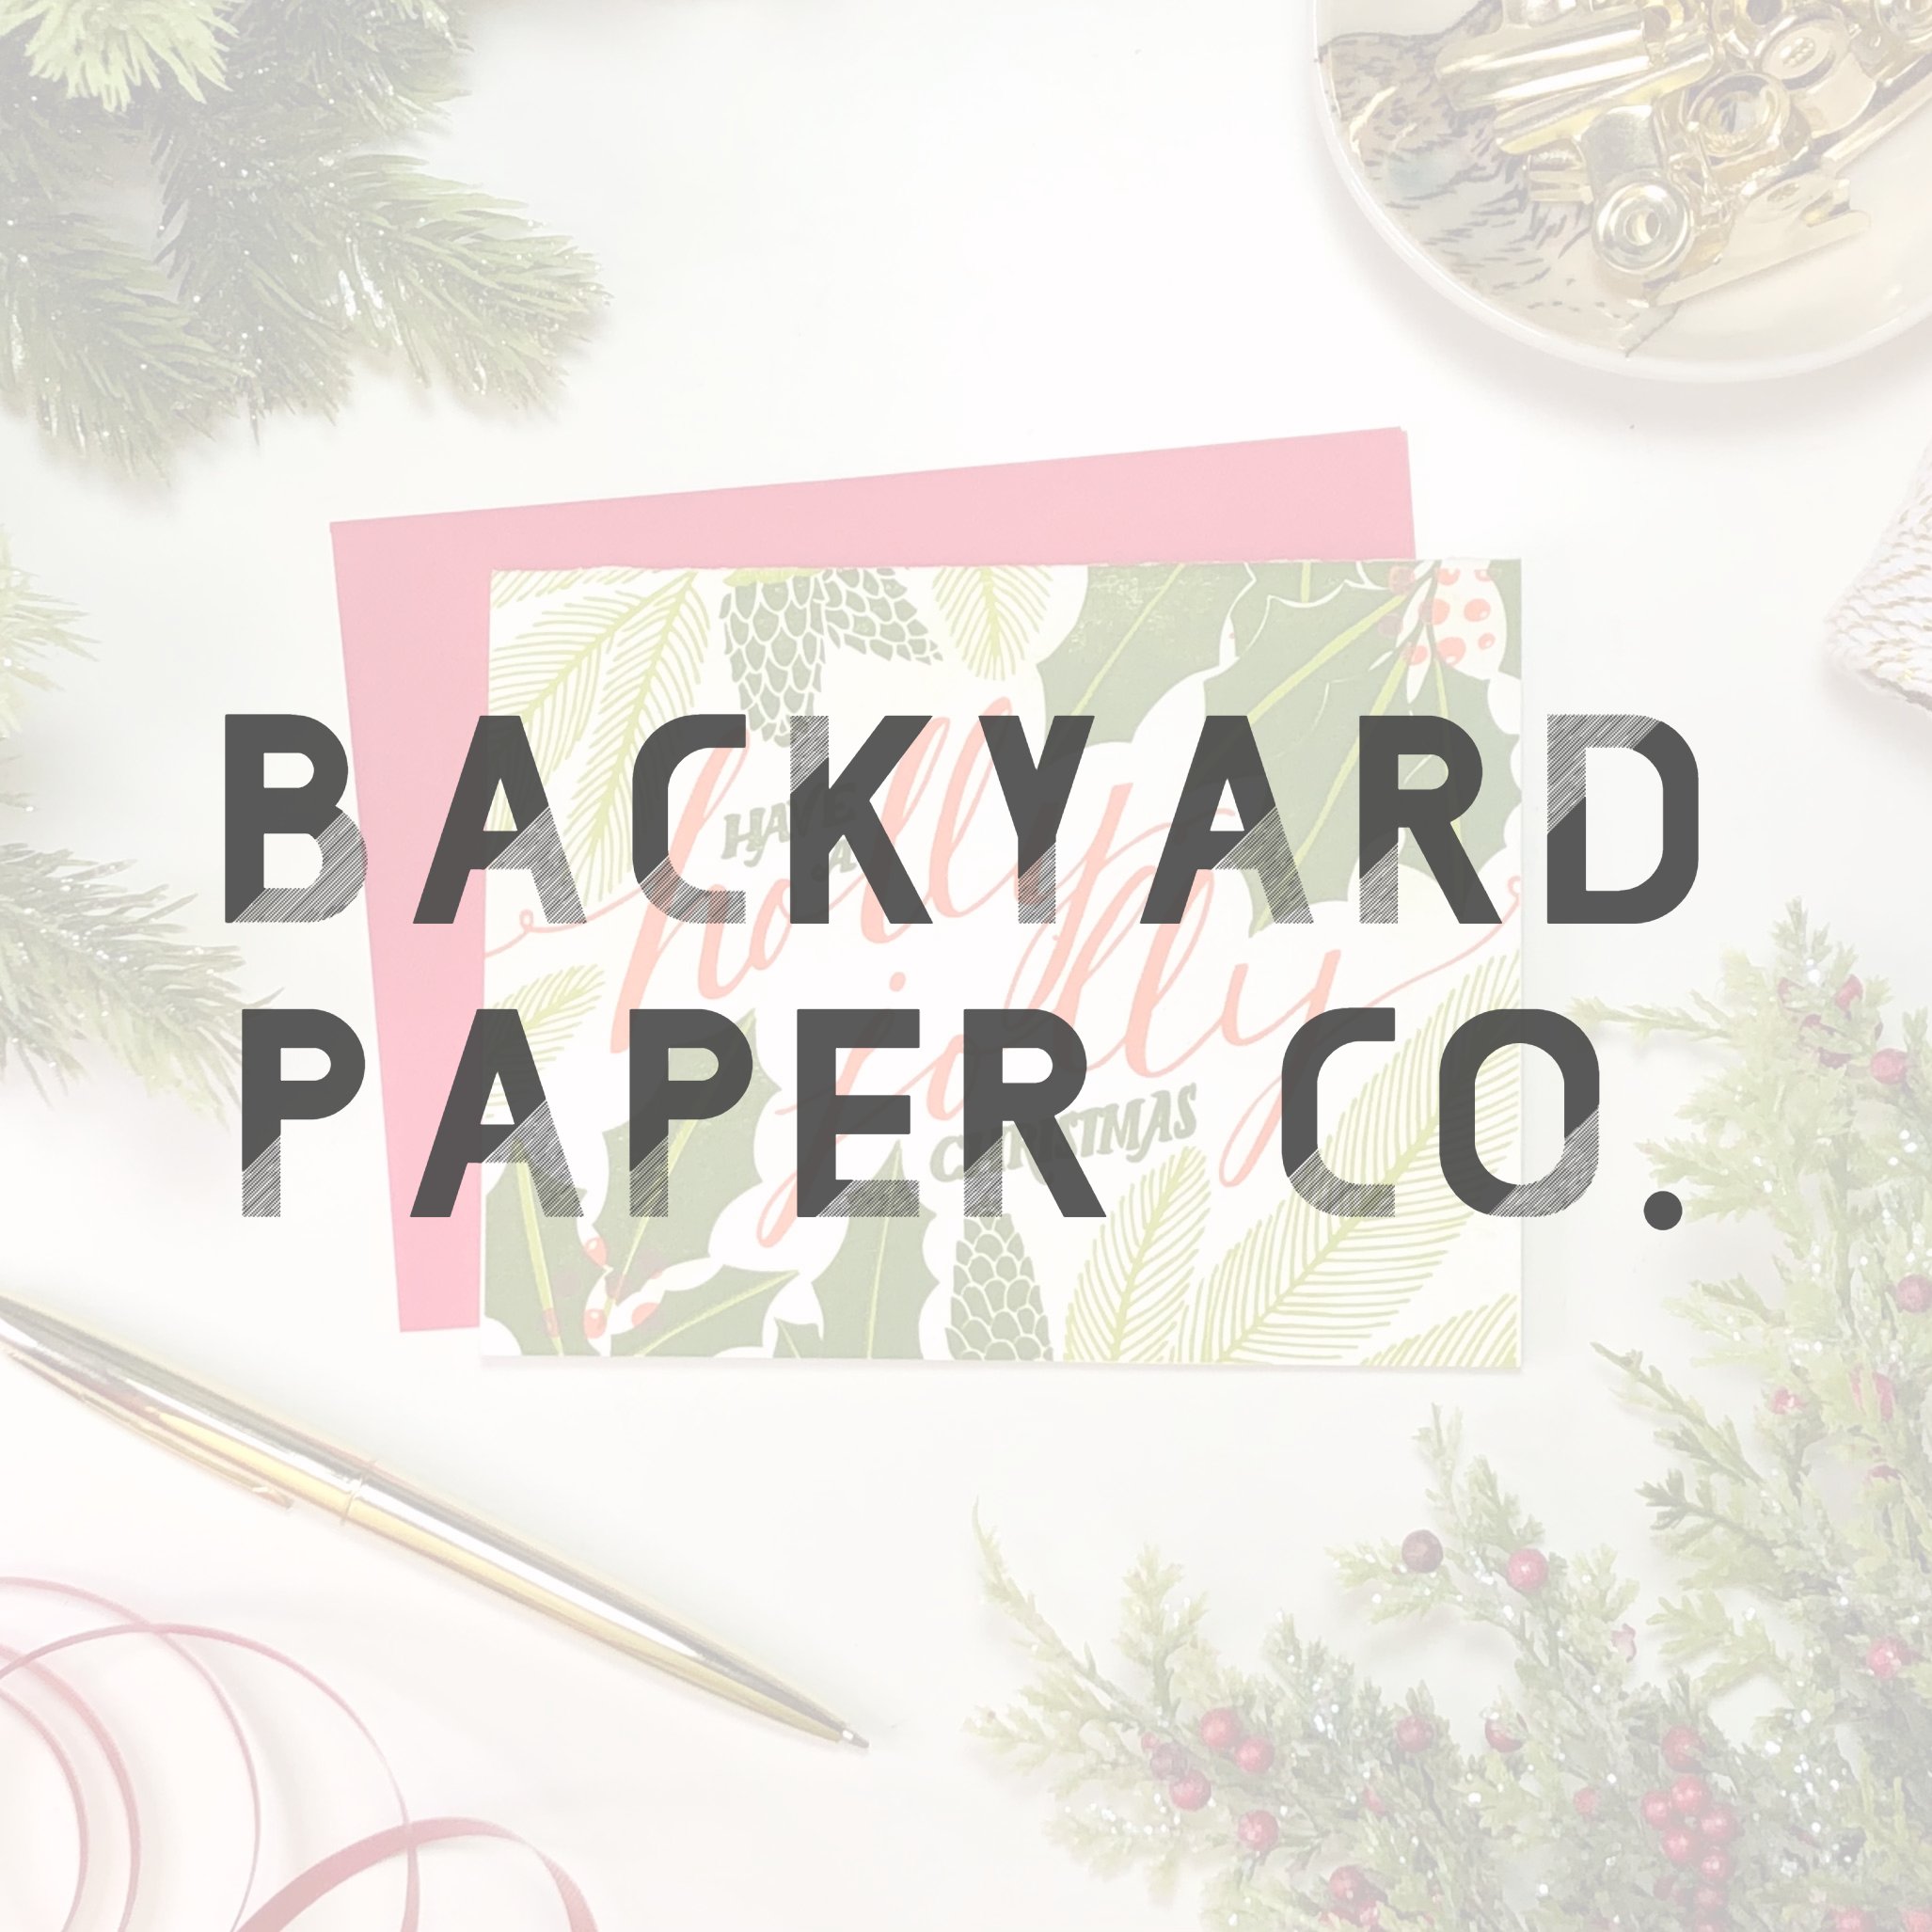 Backyard Paper Co.jpg